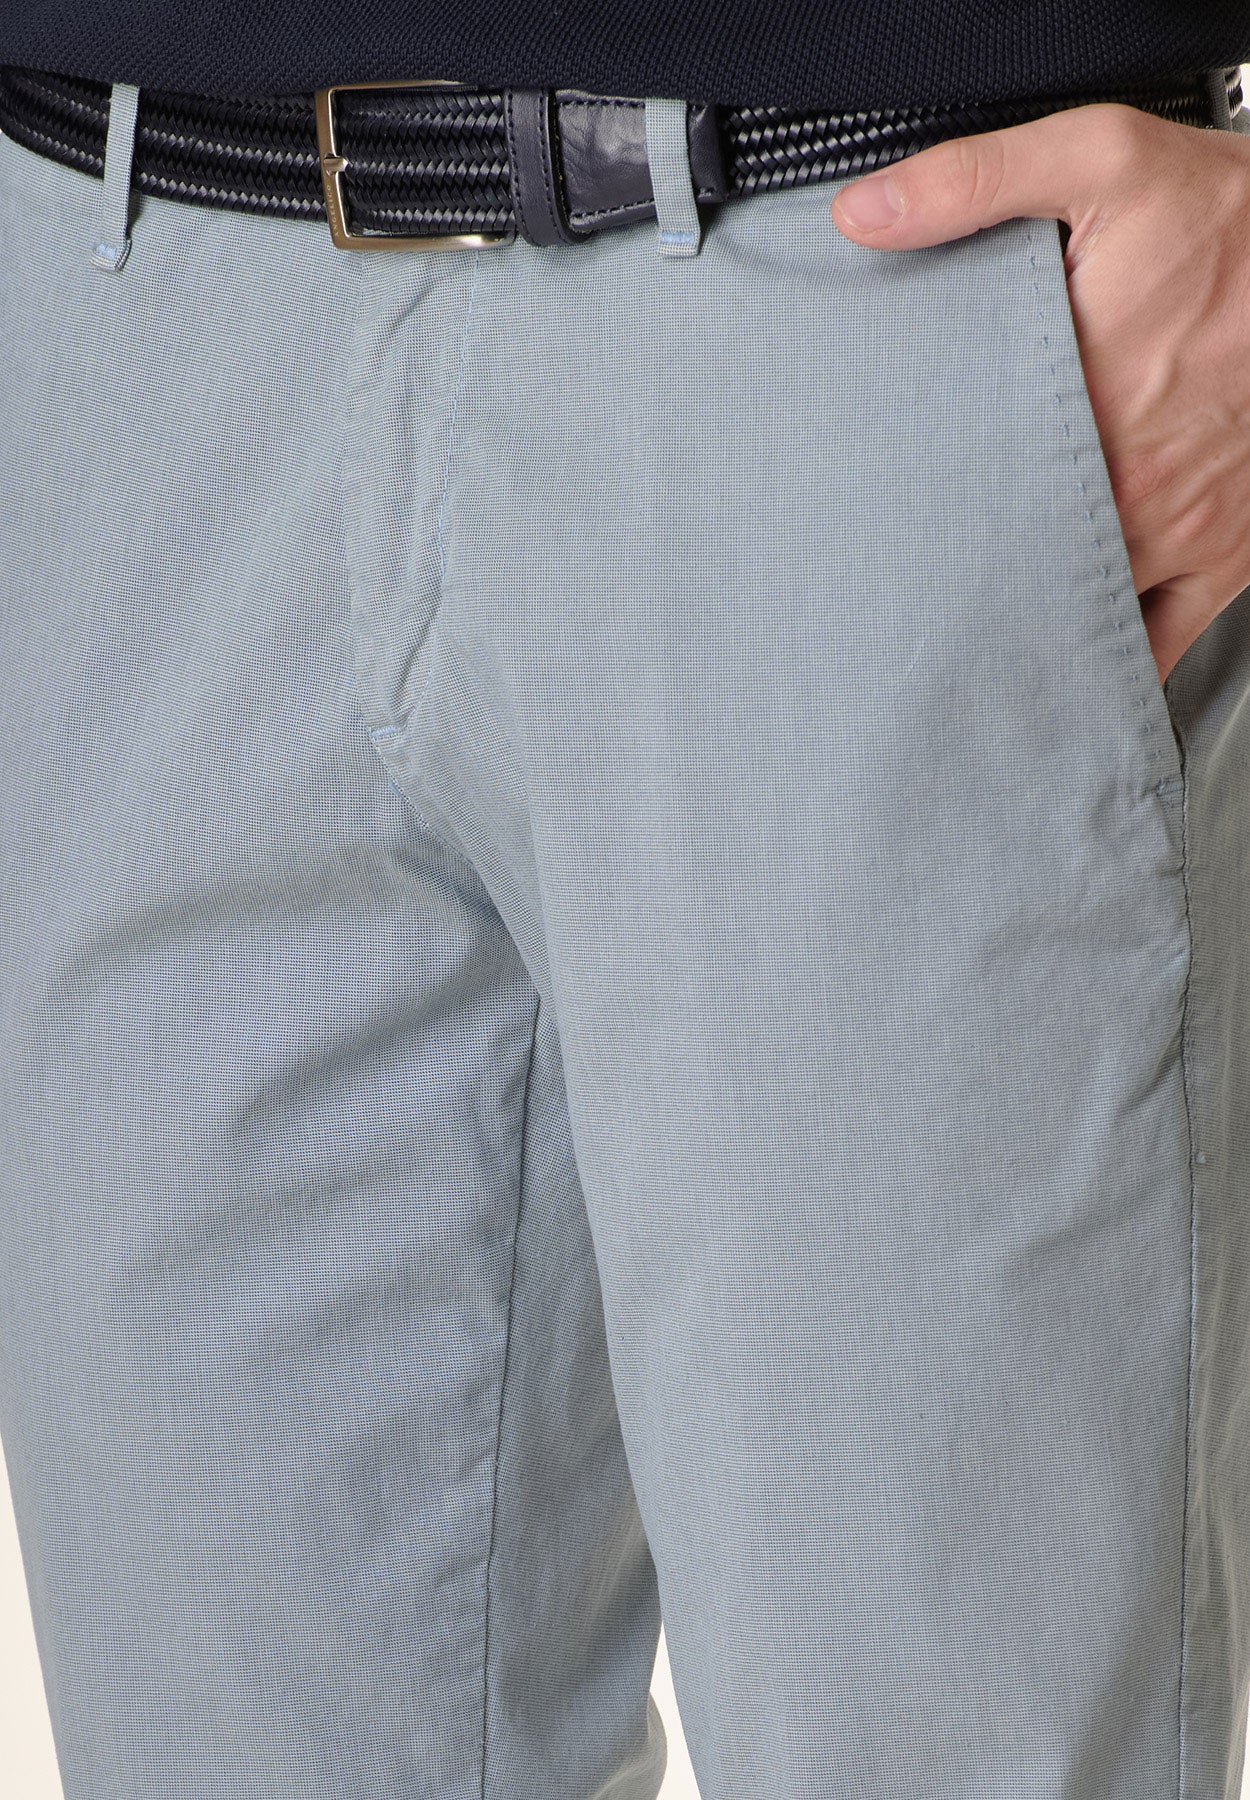 Hellblaue, mikrogewebte Stretch-Baumwollhose mit regulärer Passform